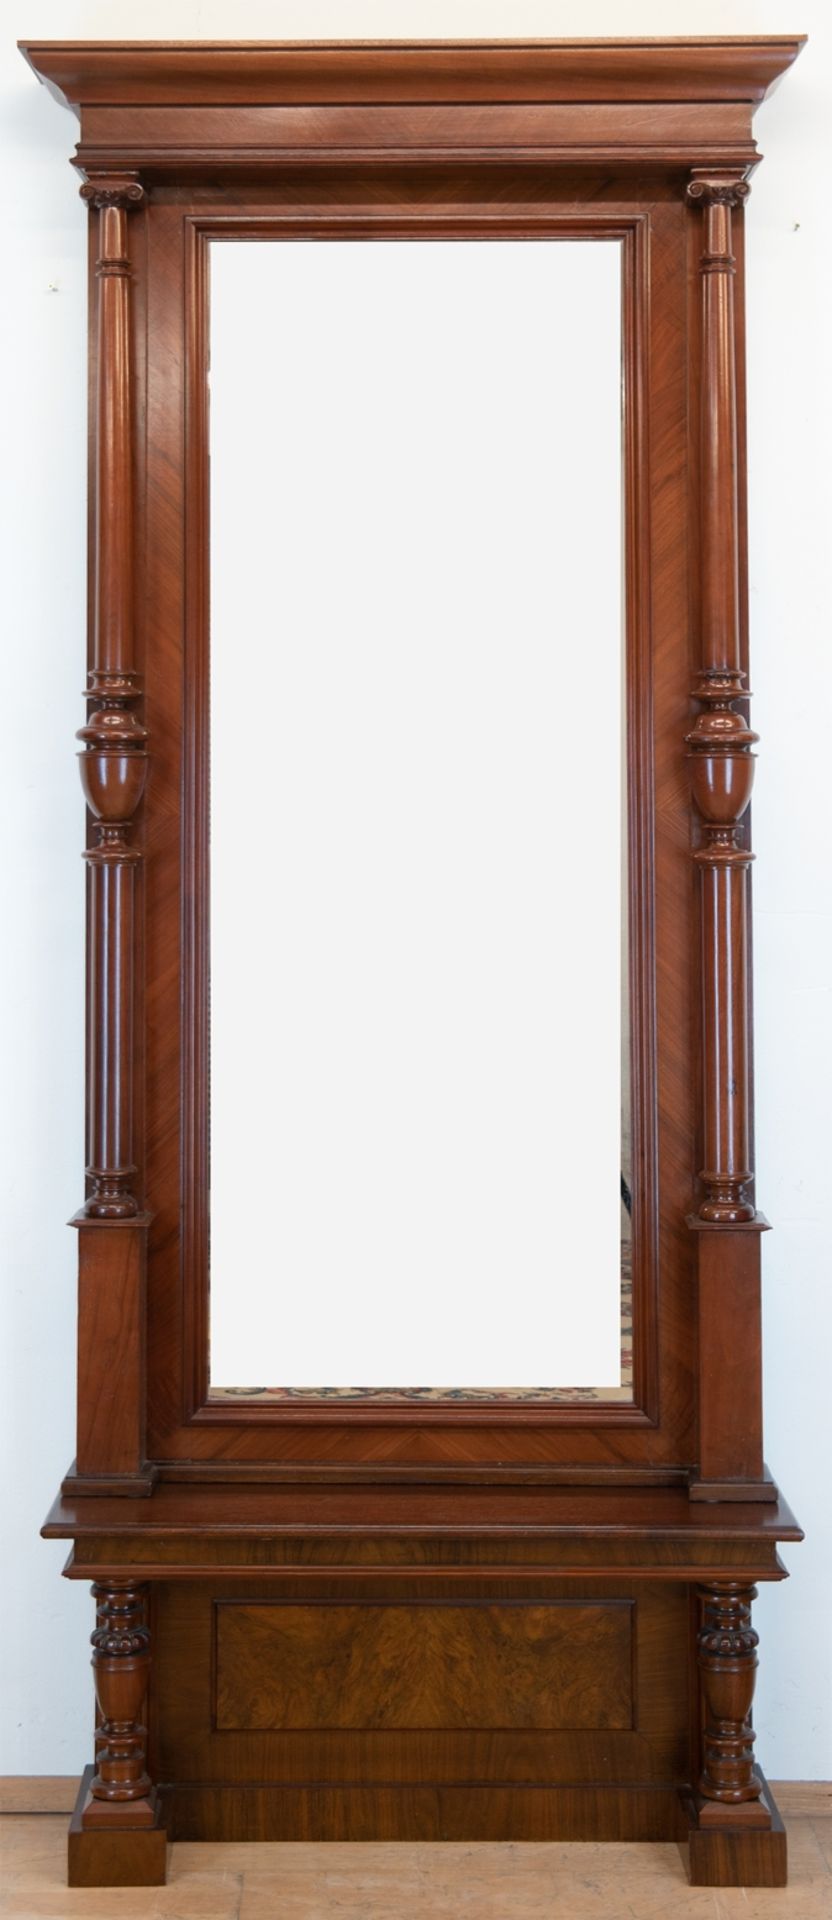 Gründerzeit-Spiegel mit Konsole, Nußbaum, vorgesetzte Vollsäulen, seitliche Risse, Gebrauchspuren, 